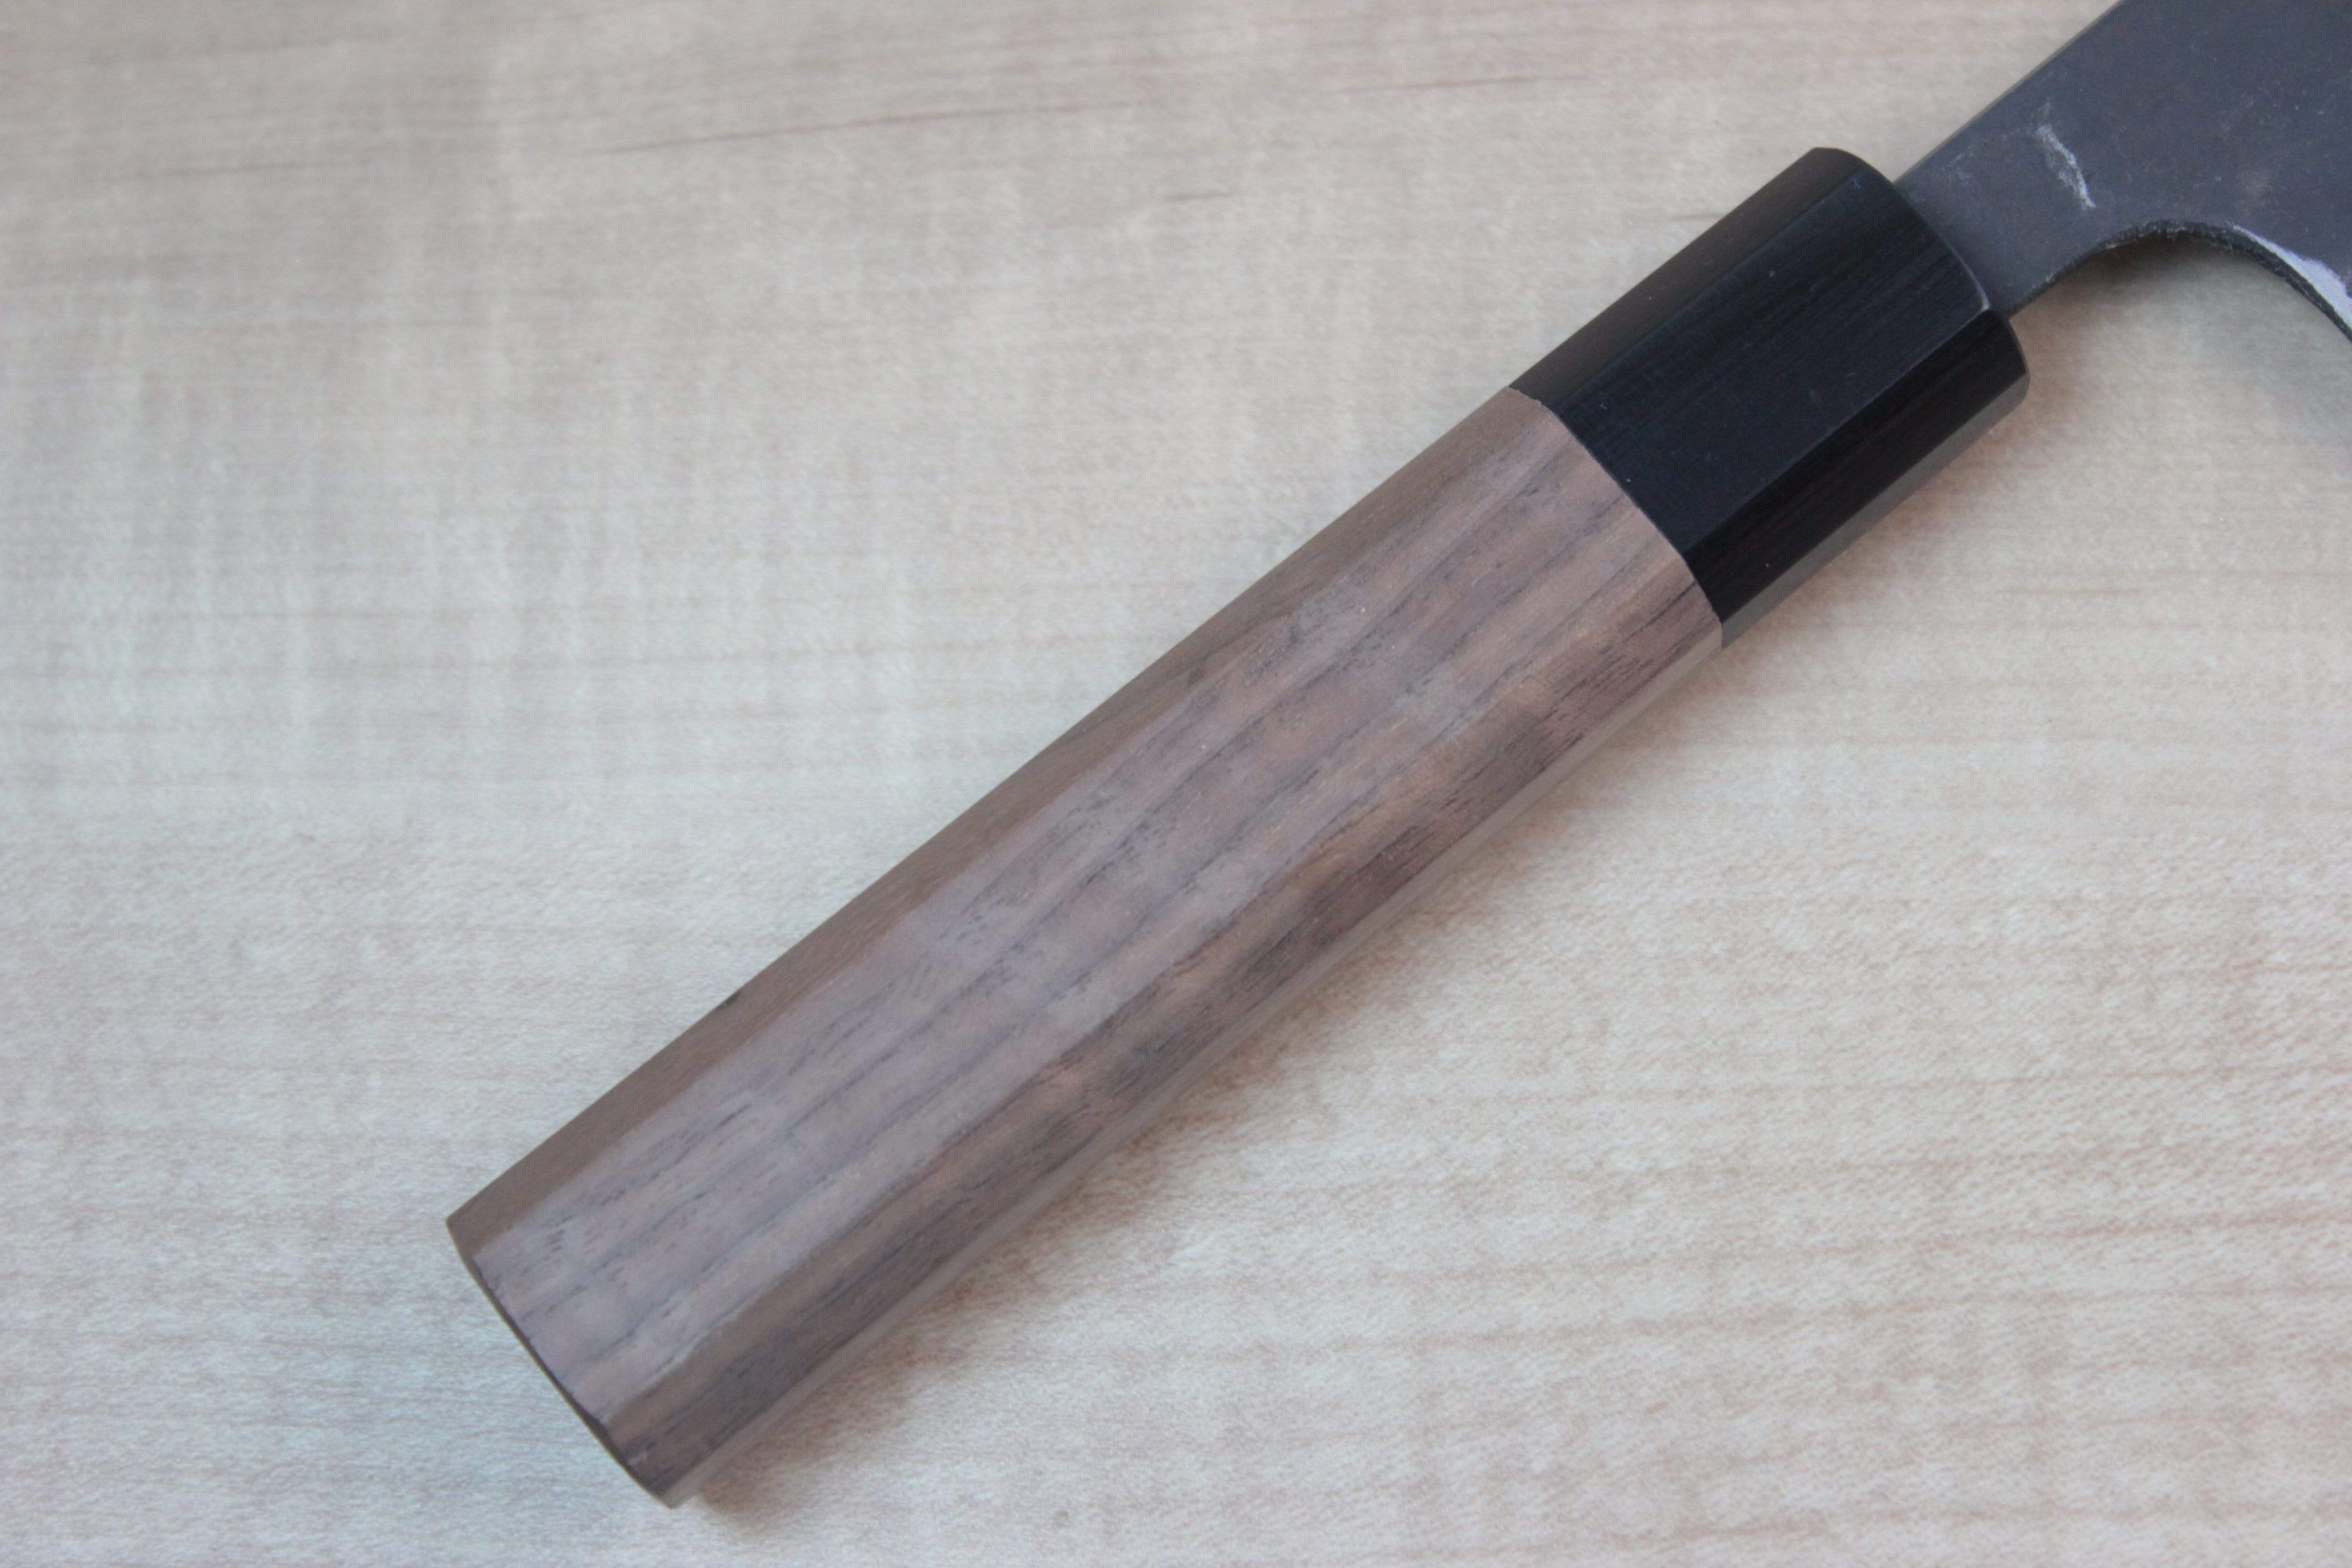 https://japanesechefsknife.com/cdn/shop/products/fu-rin-ka-zan-bunka-fu-rin-ka-zan-aogami-super-kurouchi-series-fab-6w-bunka-185mm-7-2-inch-octagon-shaped-walnut-wood-handle-28506554400865.jpg?v=1628336928